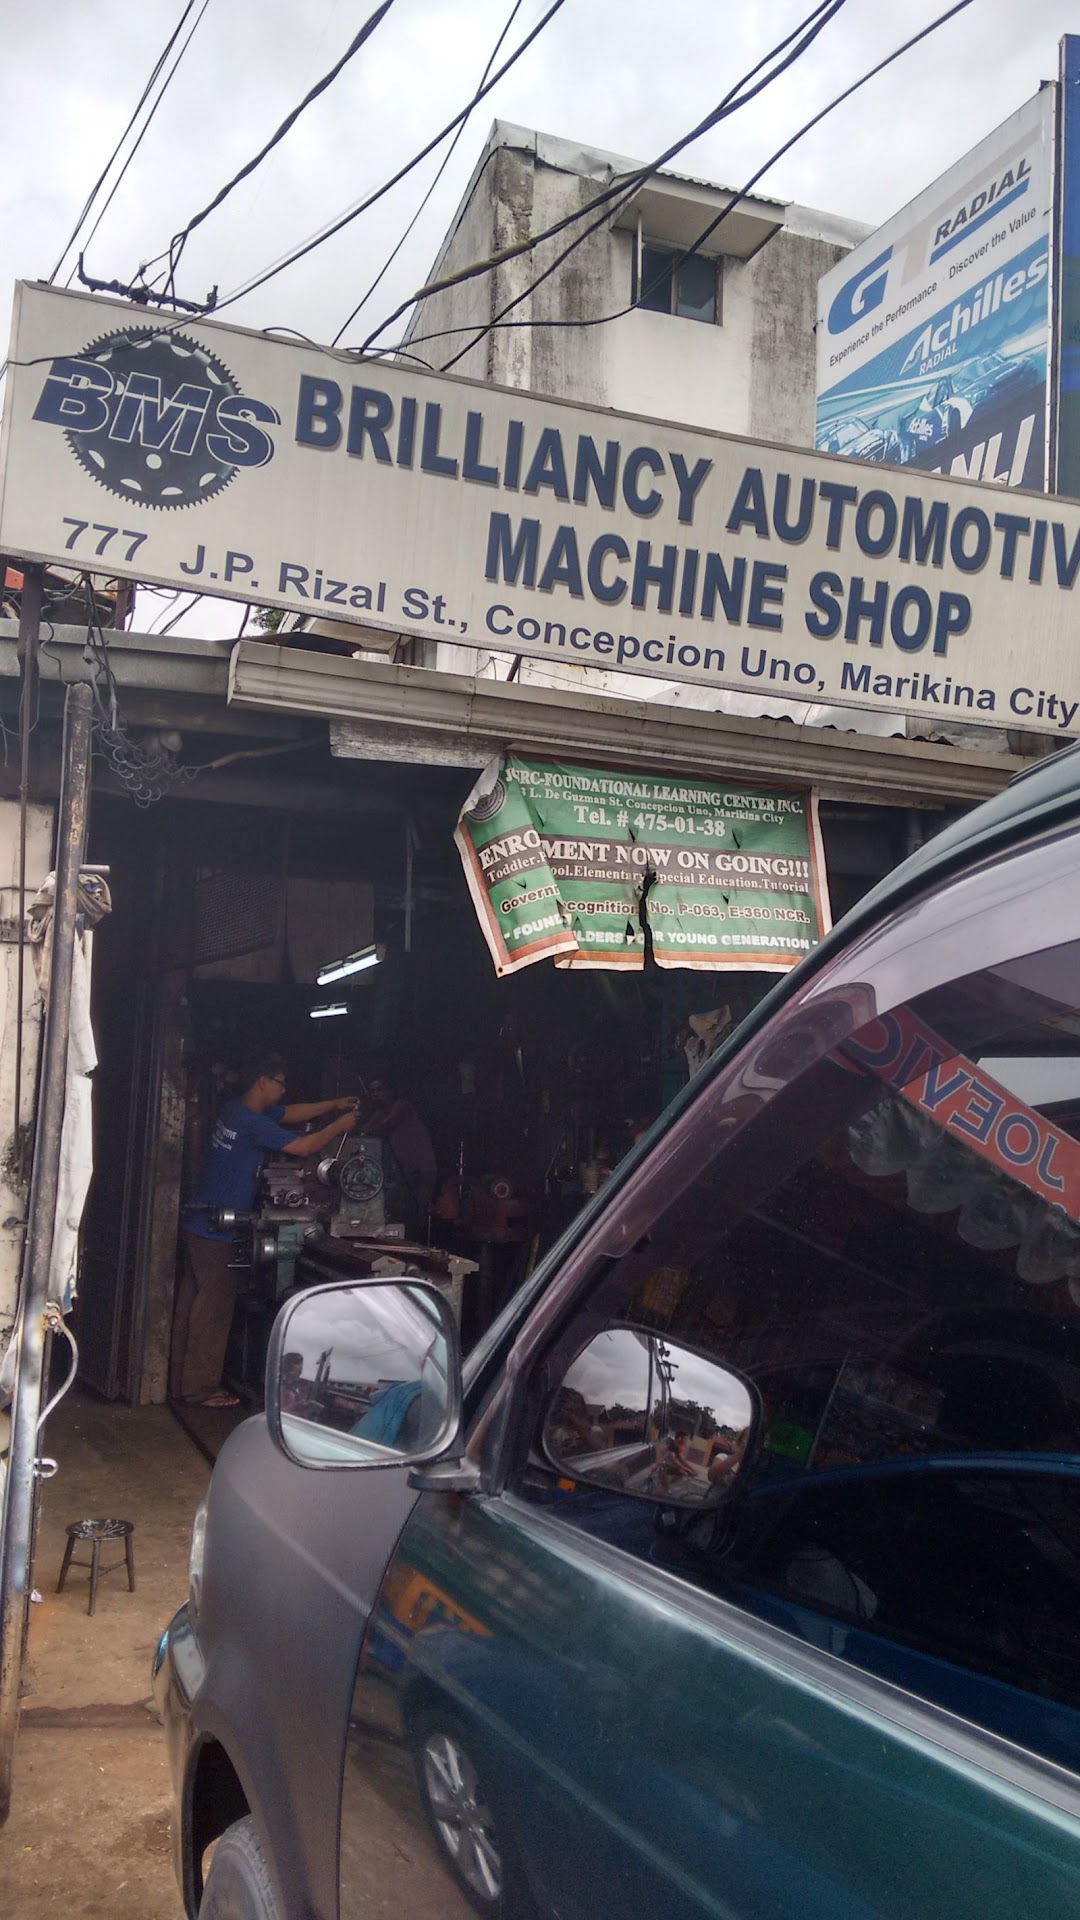 Brilliancy Automotive Machine Shop